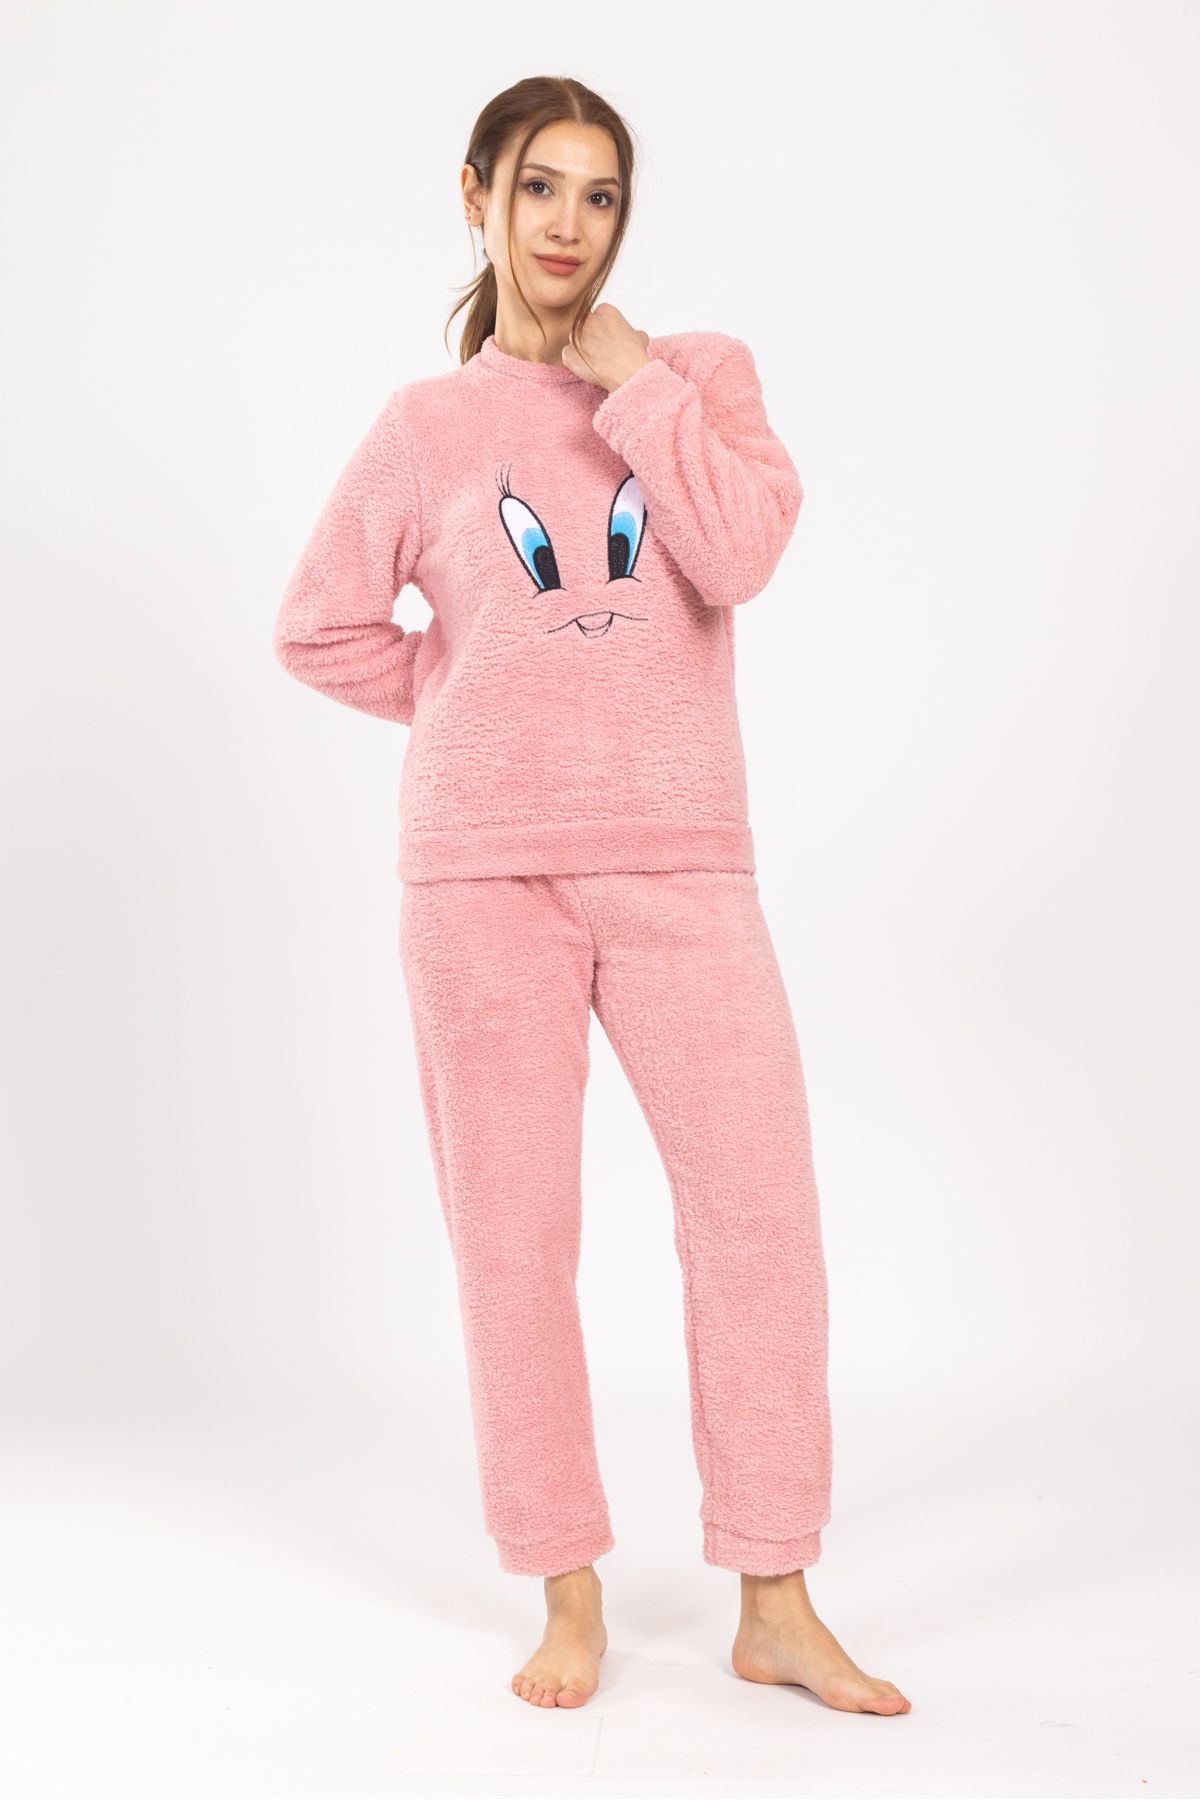 TAMPAP Kadın Kışlık Peluş Pijama Takımı Tweety Takım Tampap 8170